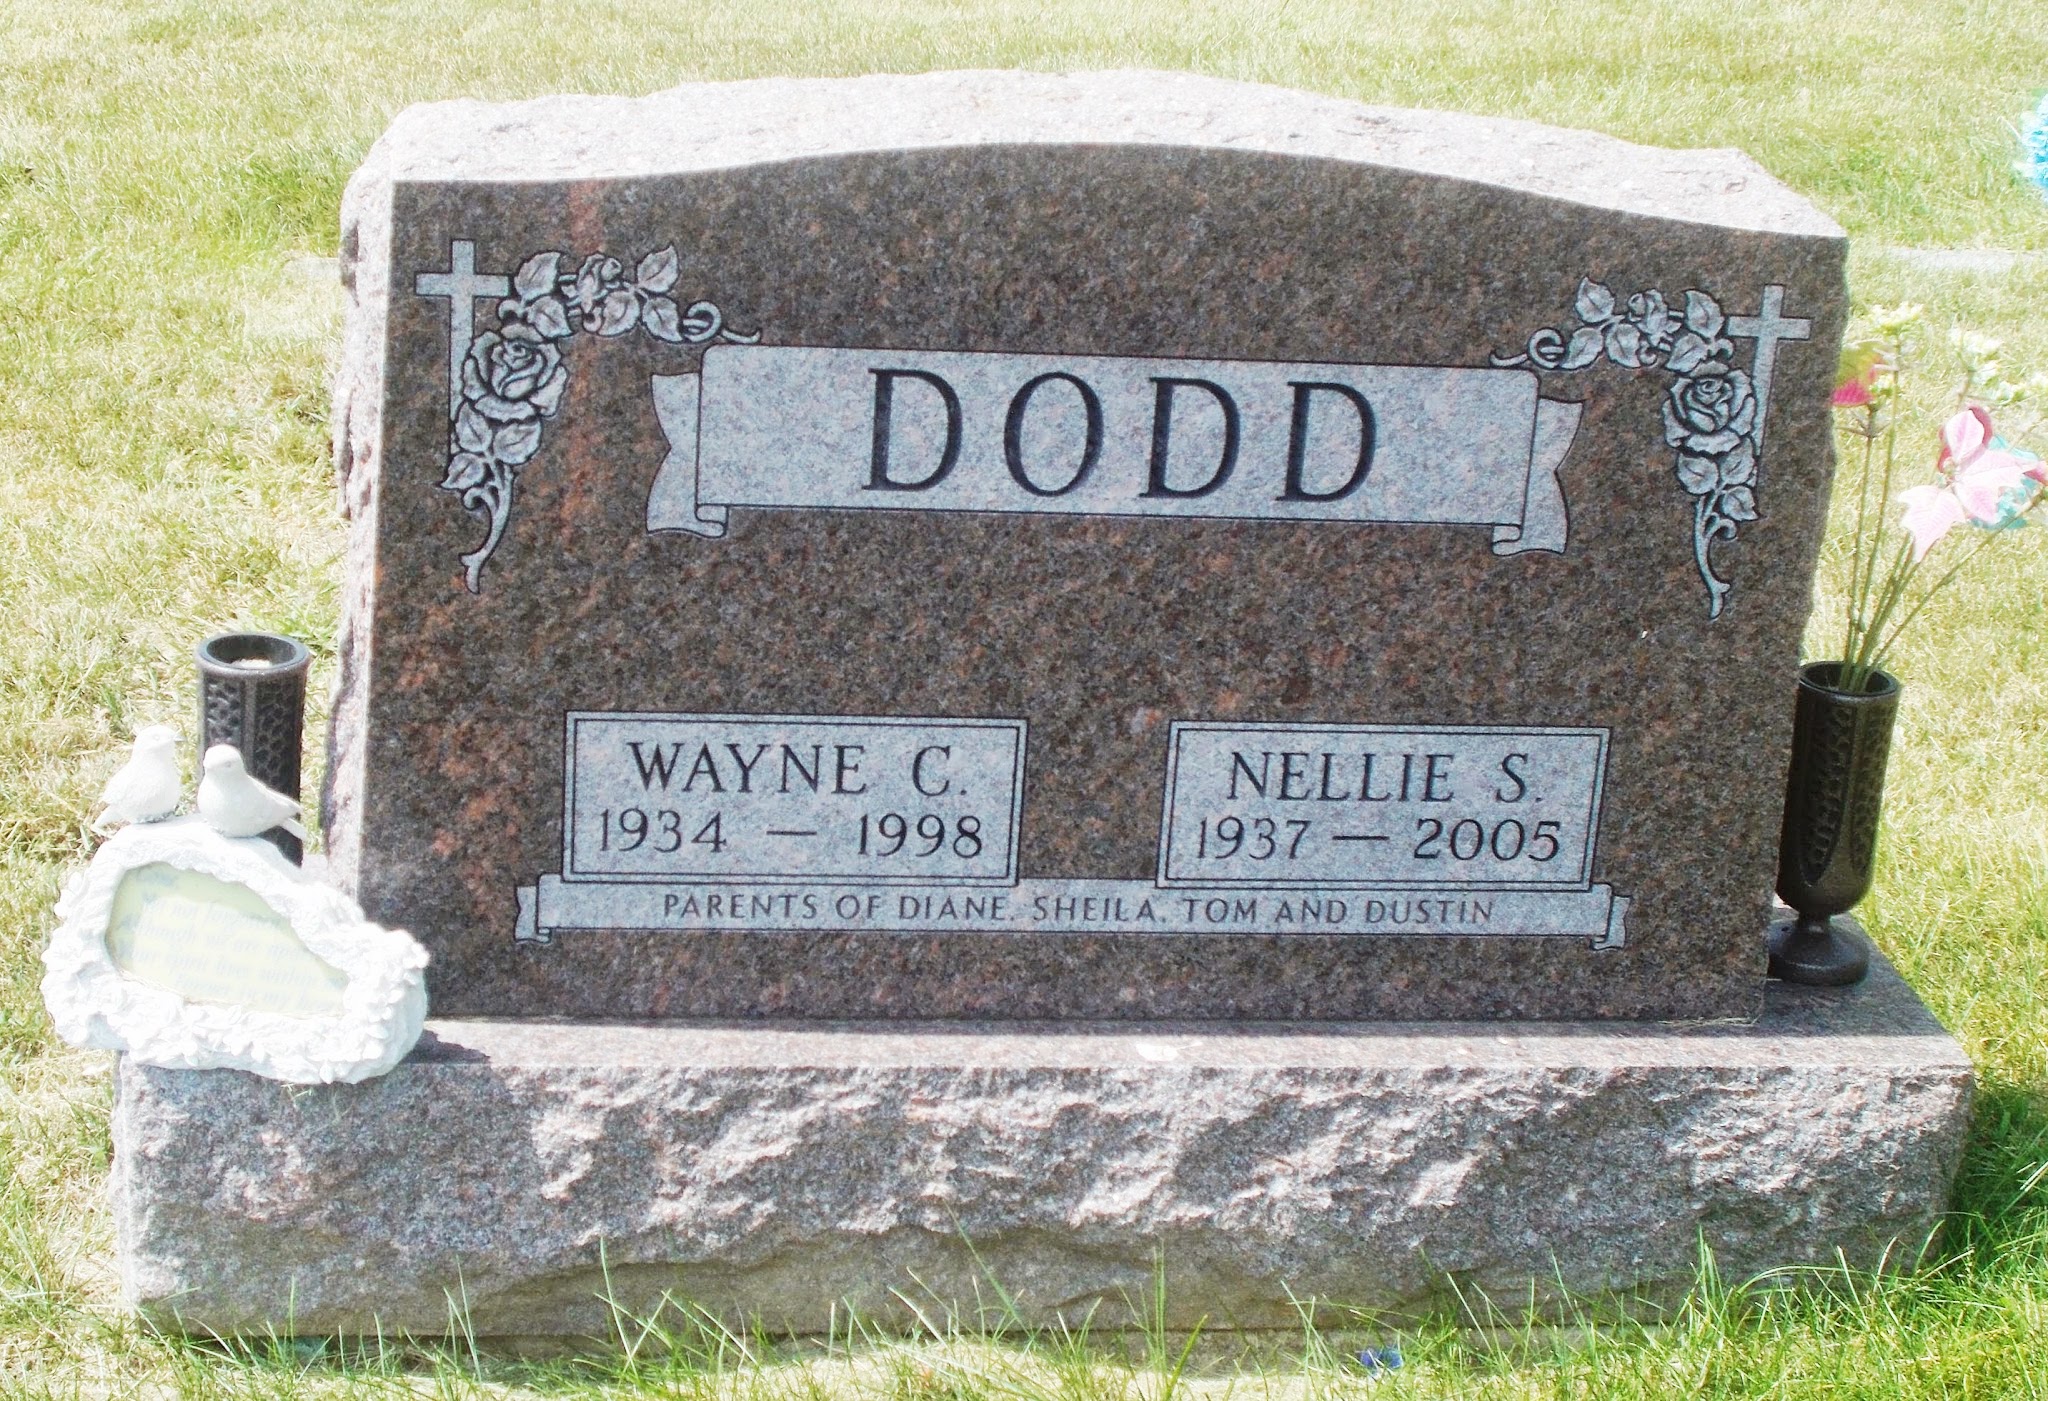 Wayne C Dodd